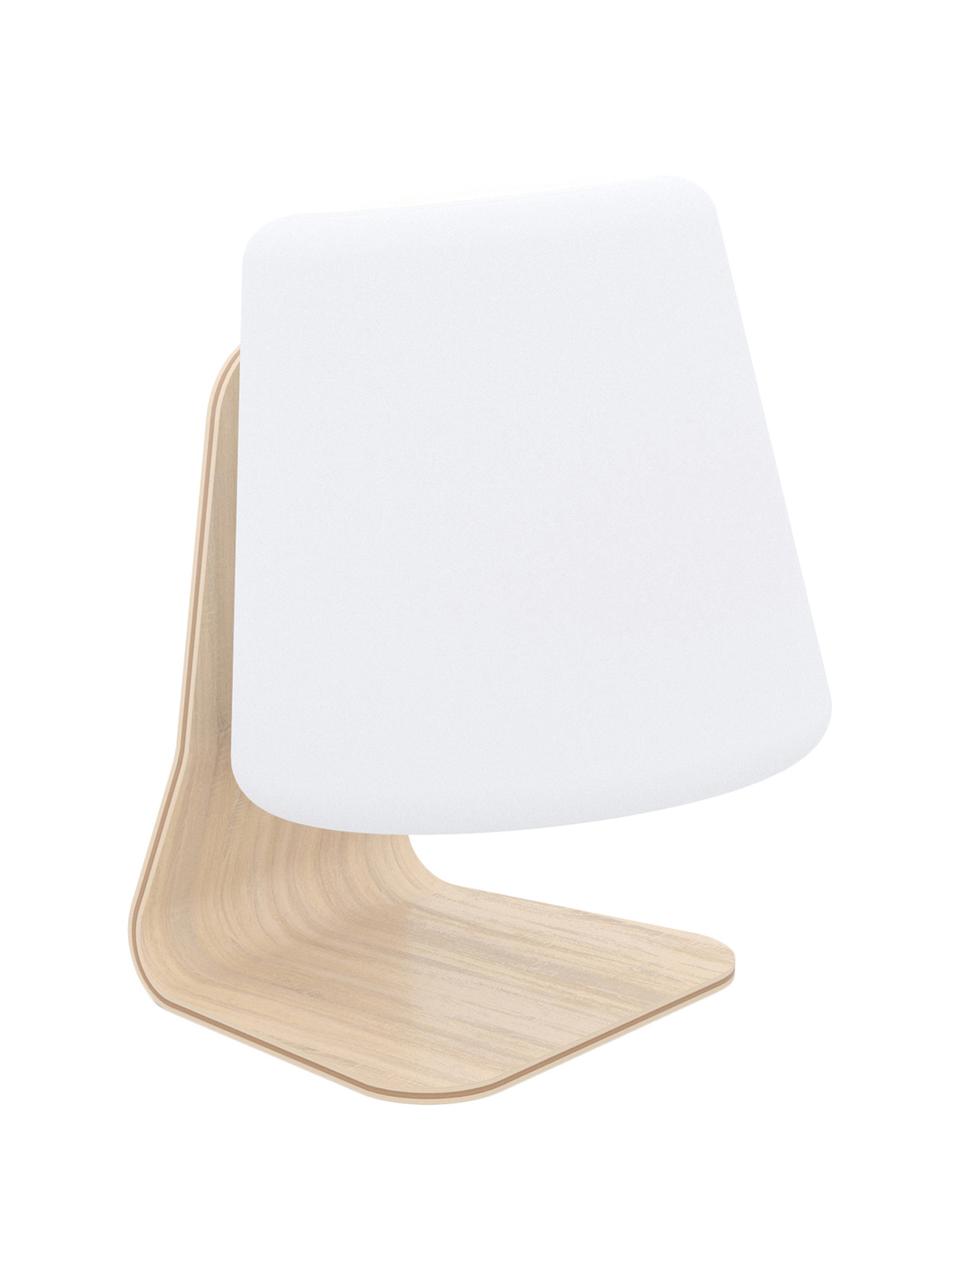 Mobile LED-Außenleuchte Table, Lampenschirm: Kunststoff, Lampenfuß: Ulmenholz mit Birkenfurni, Weiß, Hellbraun, 22 x 29 cm